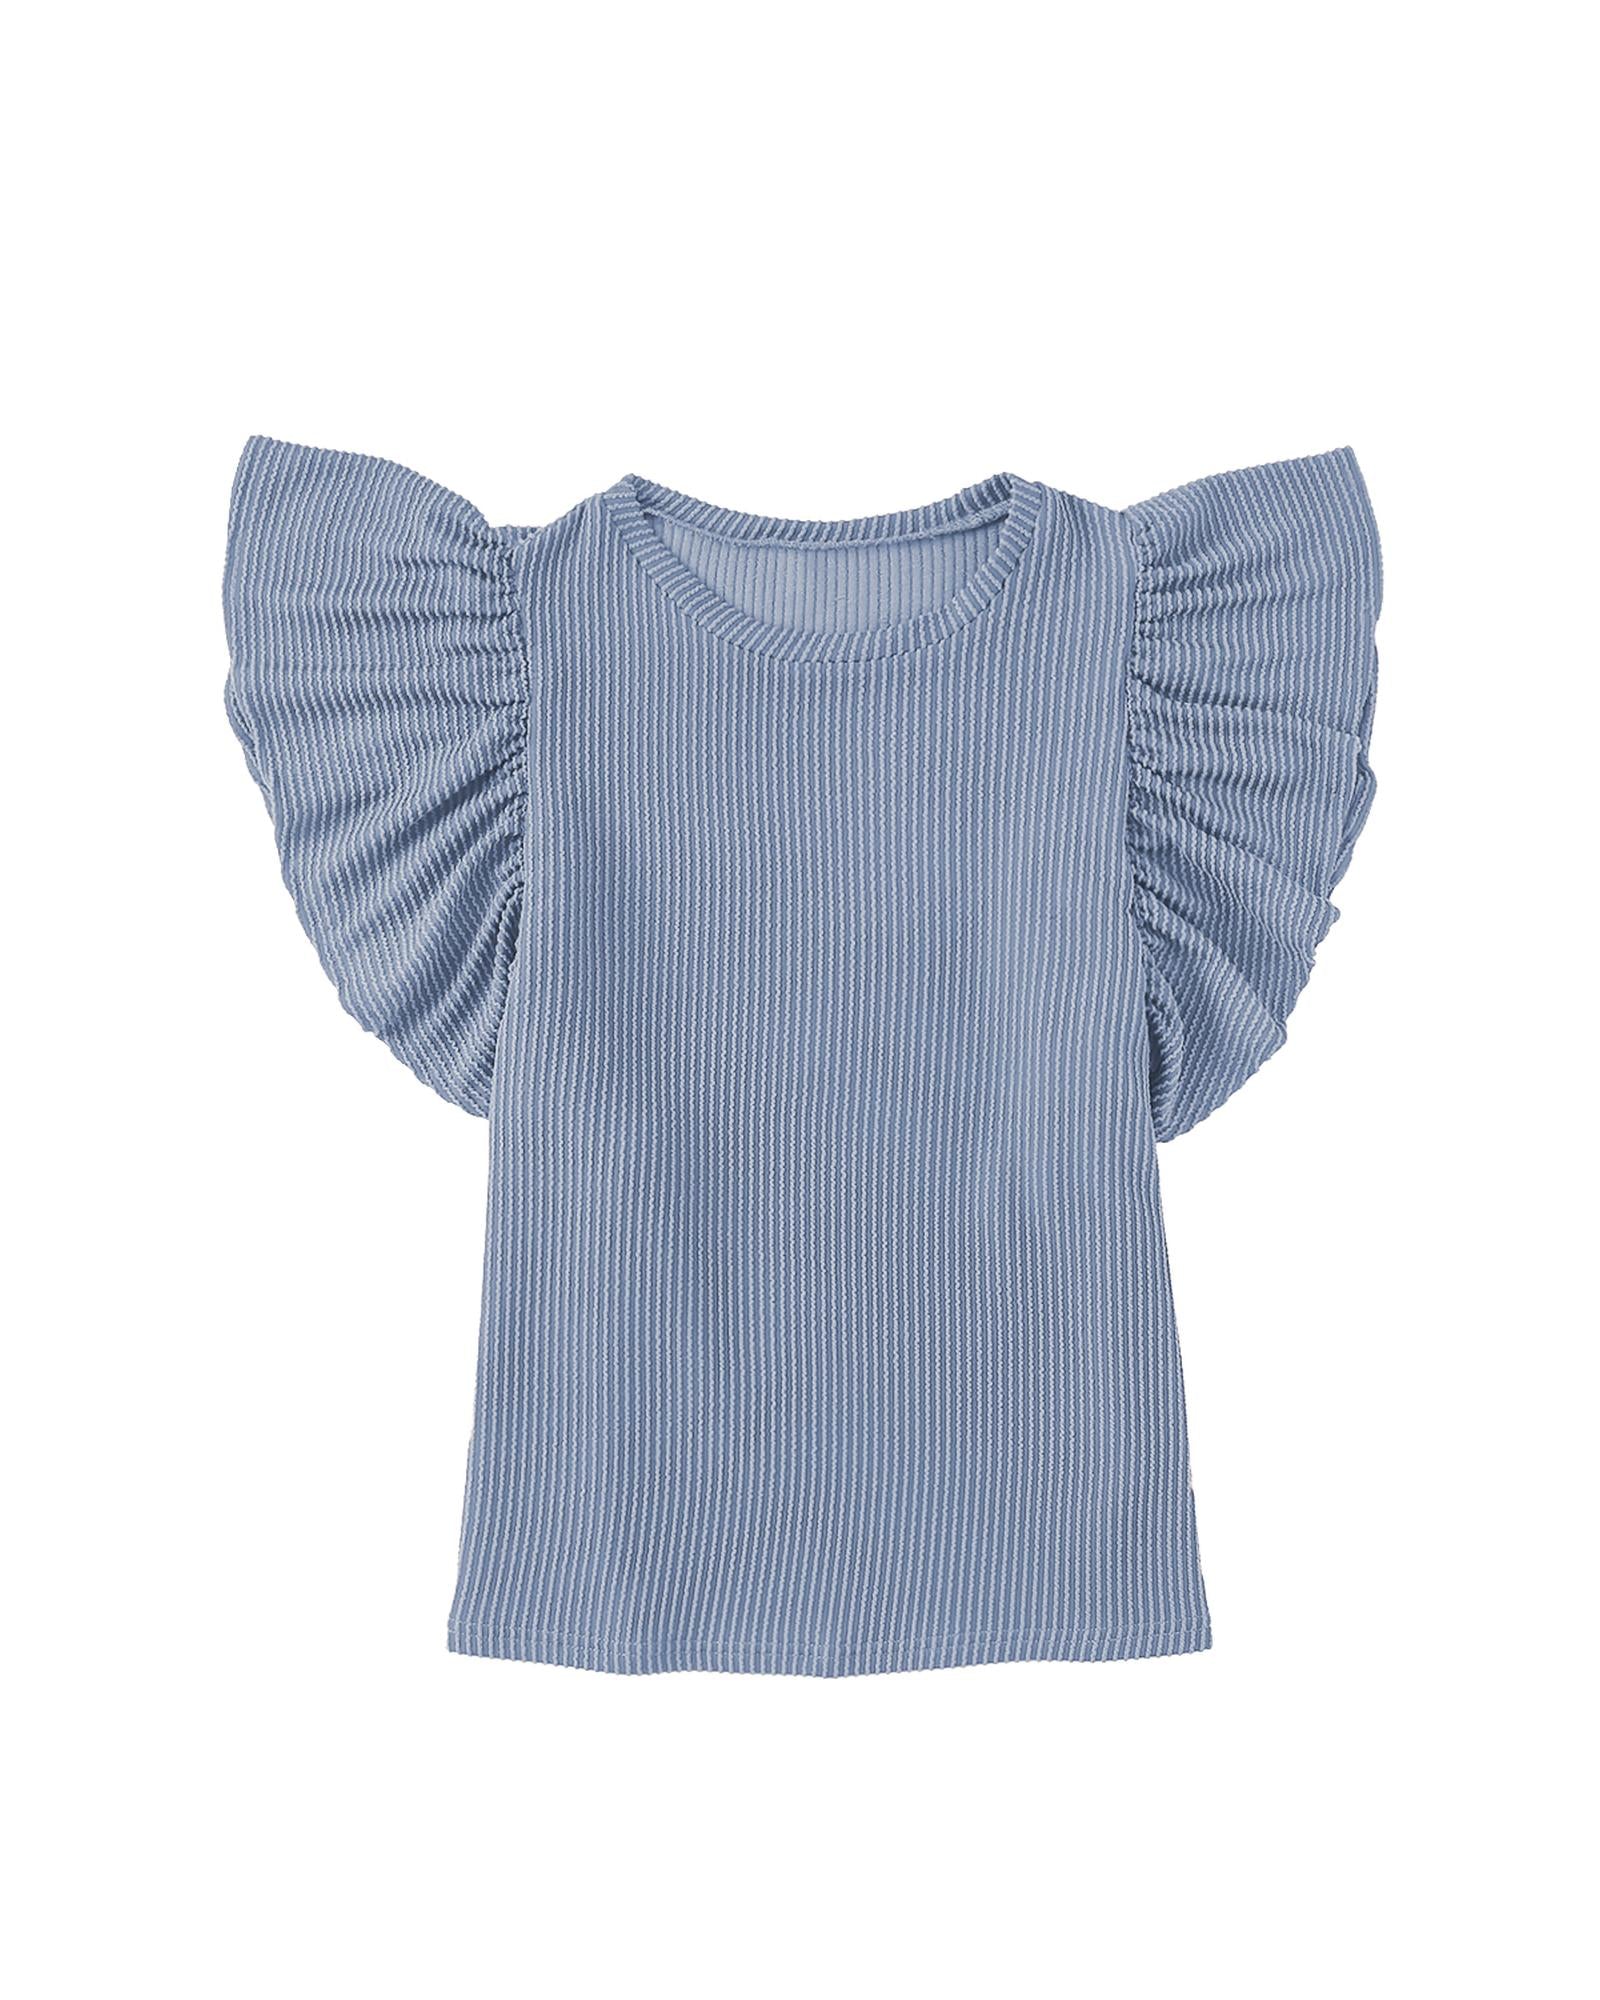 Ribbed Knit Ruffled Short Sleeve T Shirt - XL